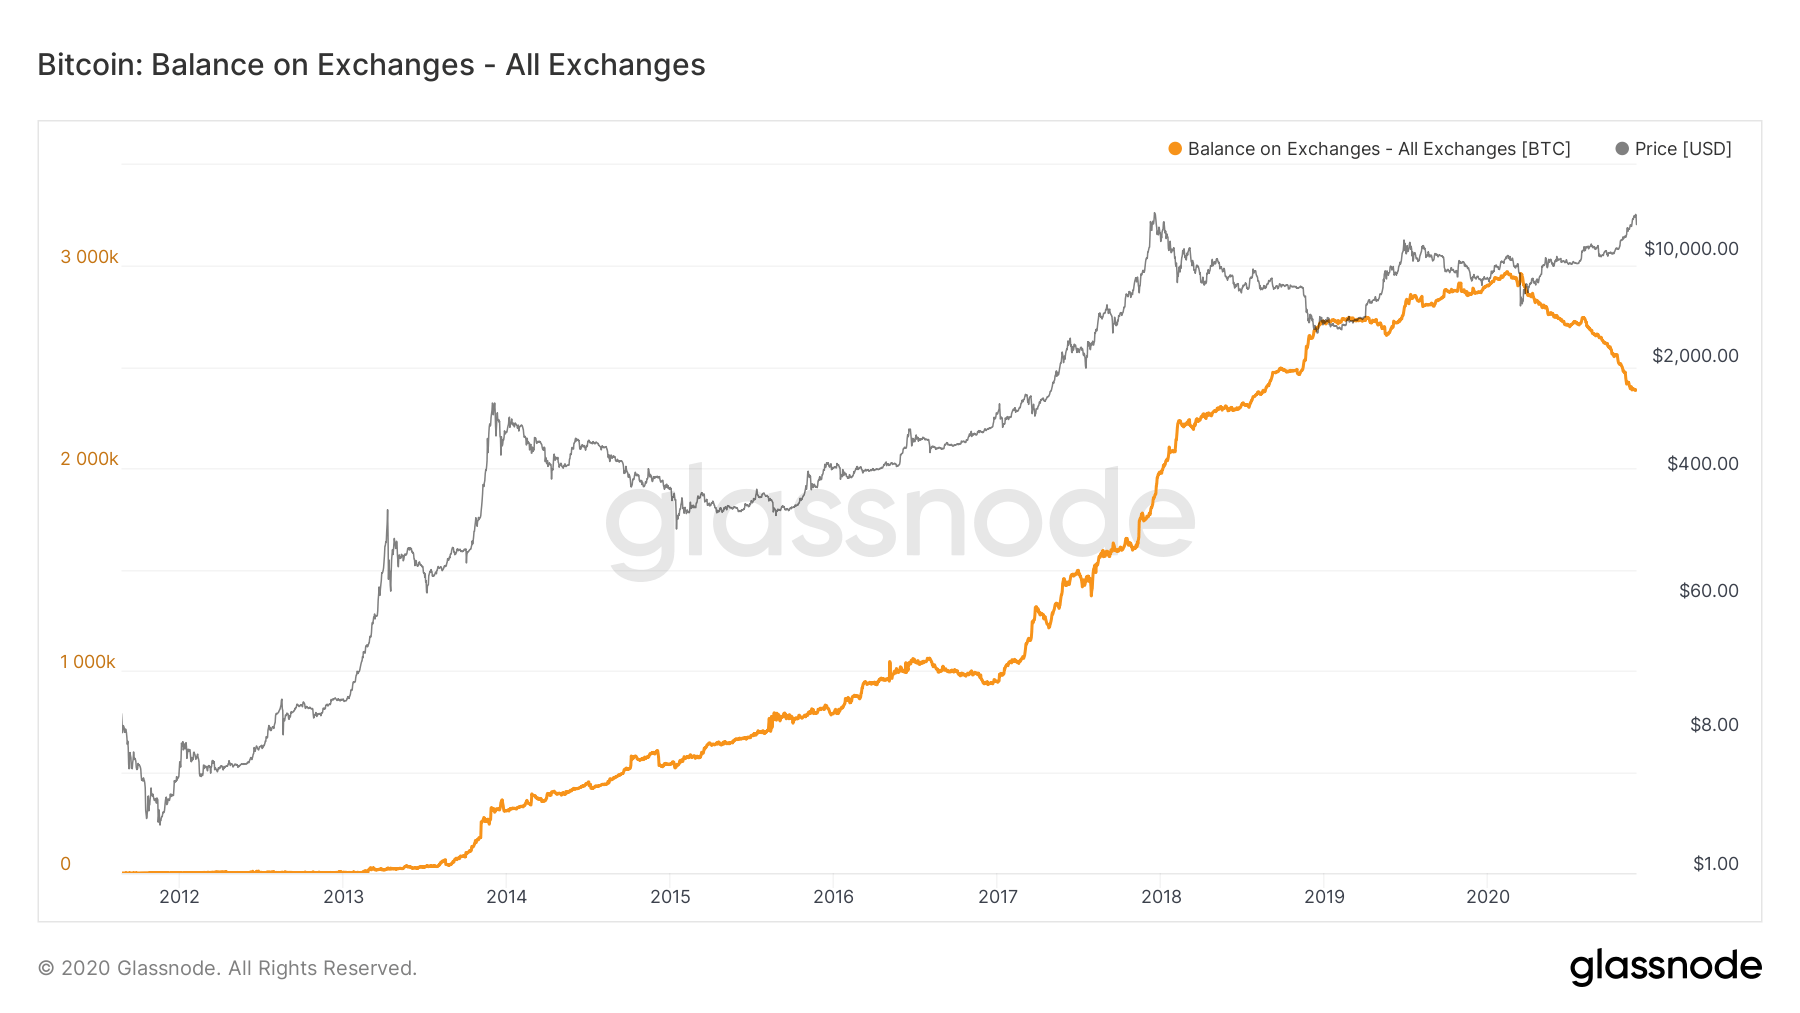 Graf koji prikazuje ponudu Bitcoina na kripto burzama kroz godine.